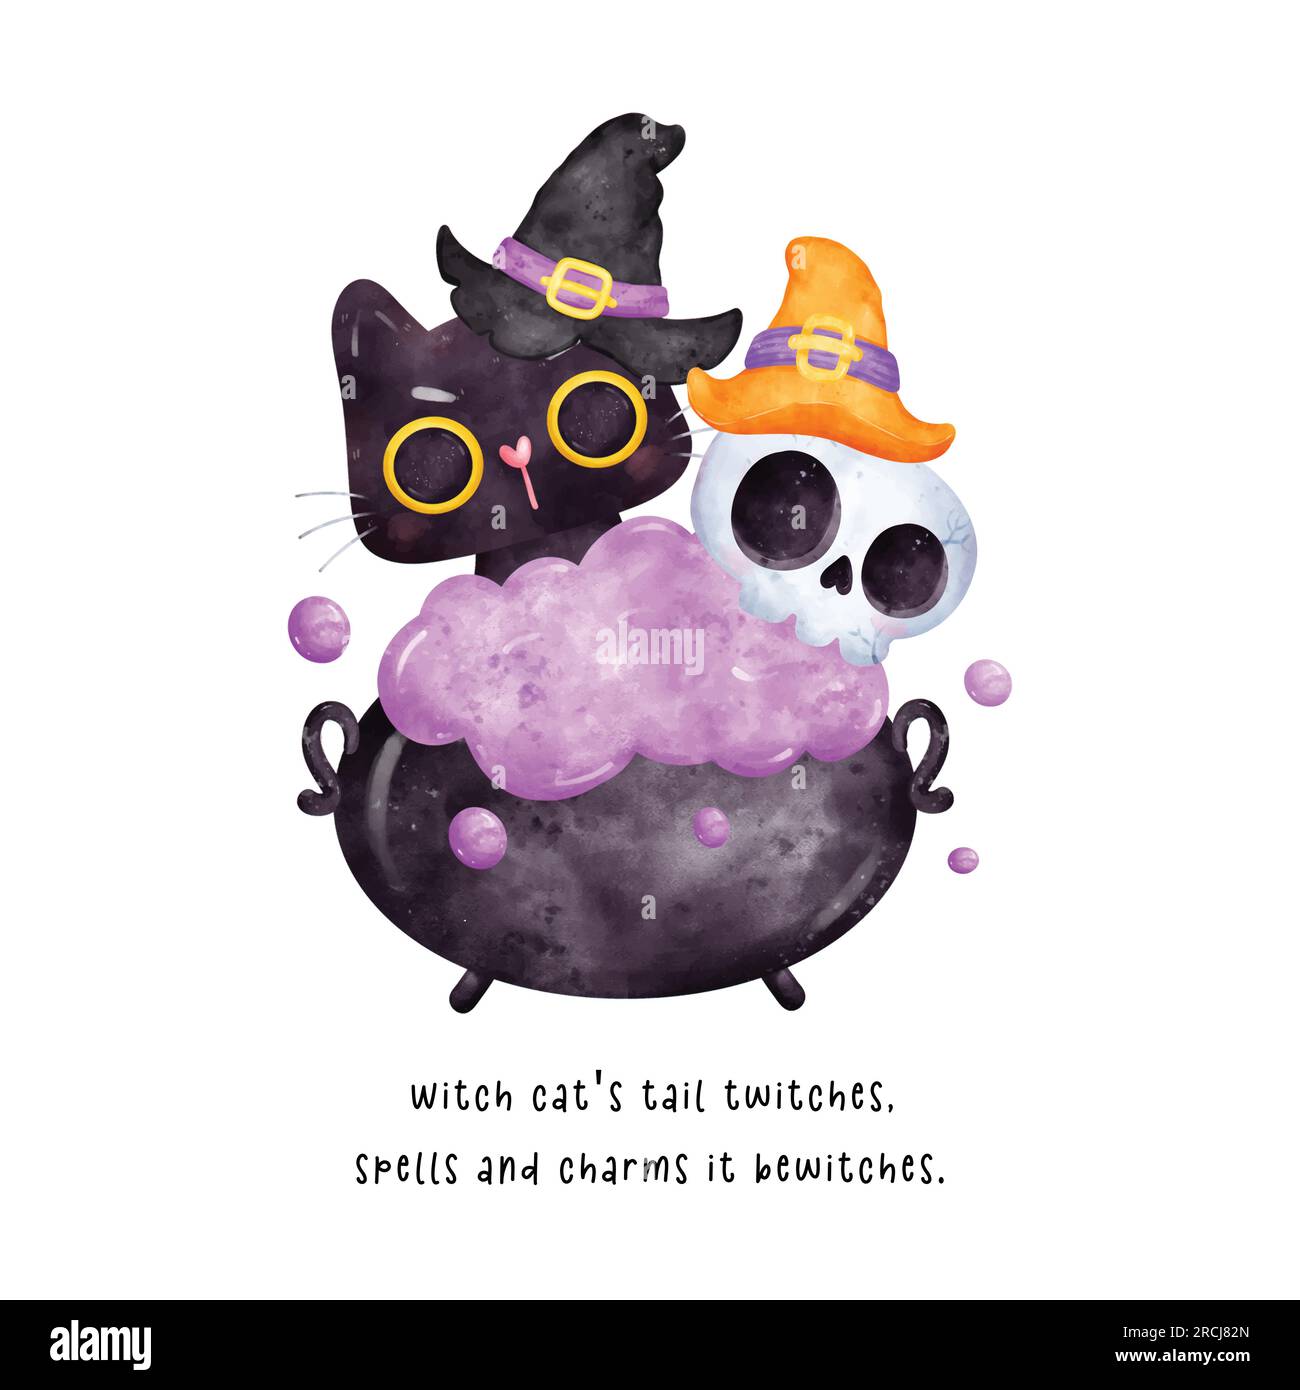 Ein bezauberndes und humorvolles Aquarell-Bild. Eine süße schwarze Katze und ein Schädel mit einem Hexenhut... Brauen Magie in einem sprudelnden Kessel zusammen Stock Vektor